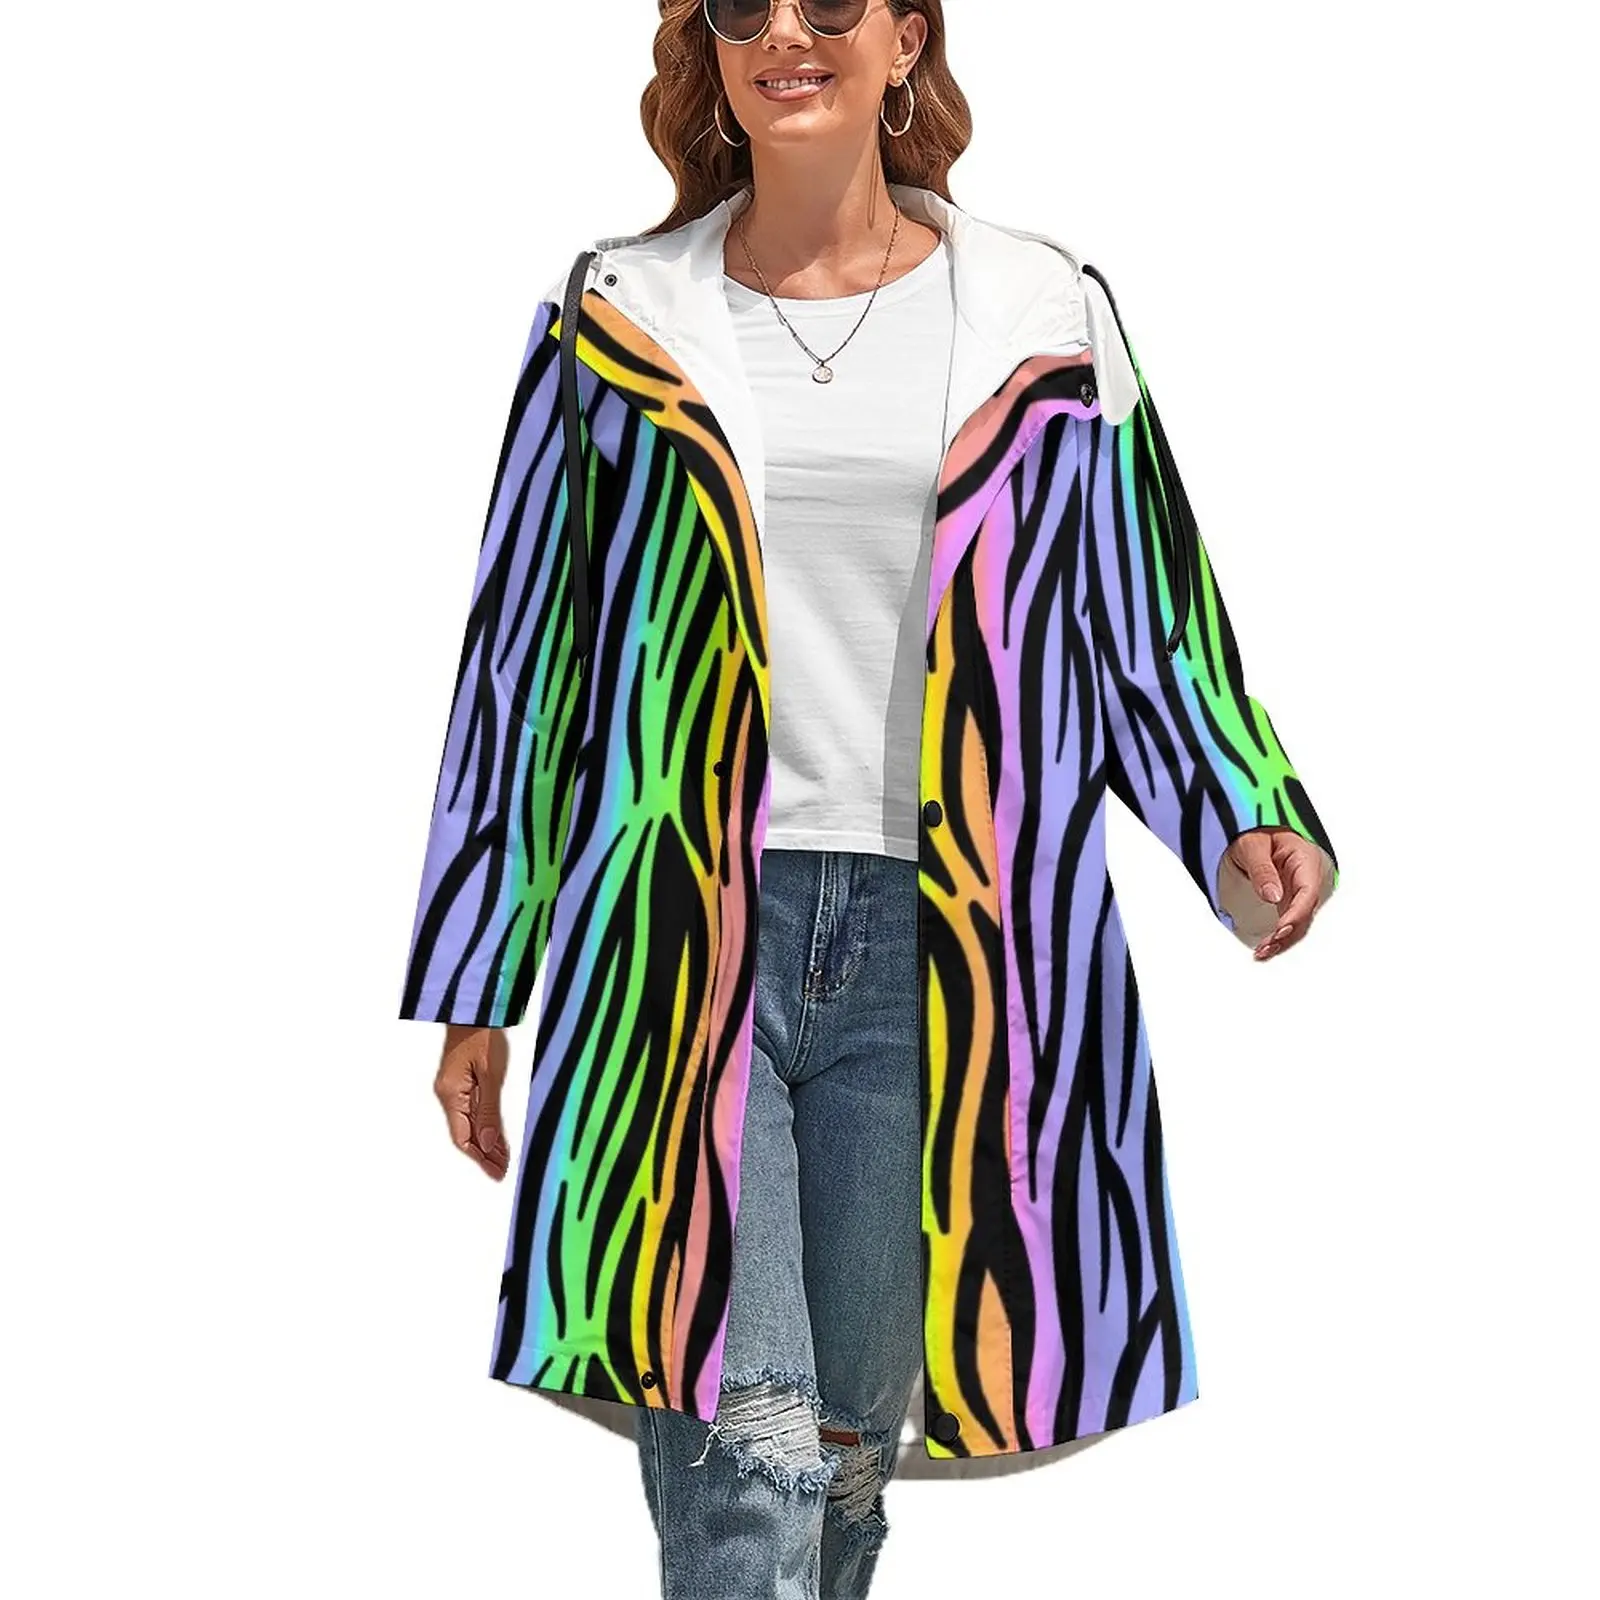 

Тренчкот с принтом тигра радуги верхняя одежда в цветную полоску зимнее пальто с узором современные повседневные куртки большого размера ...